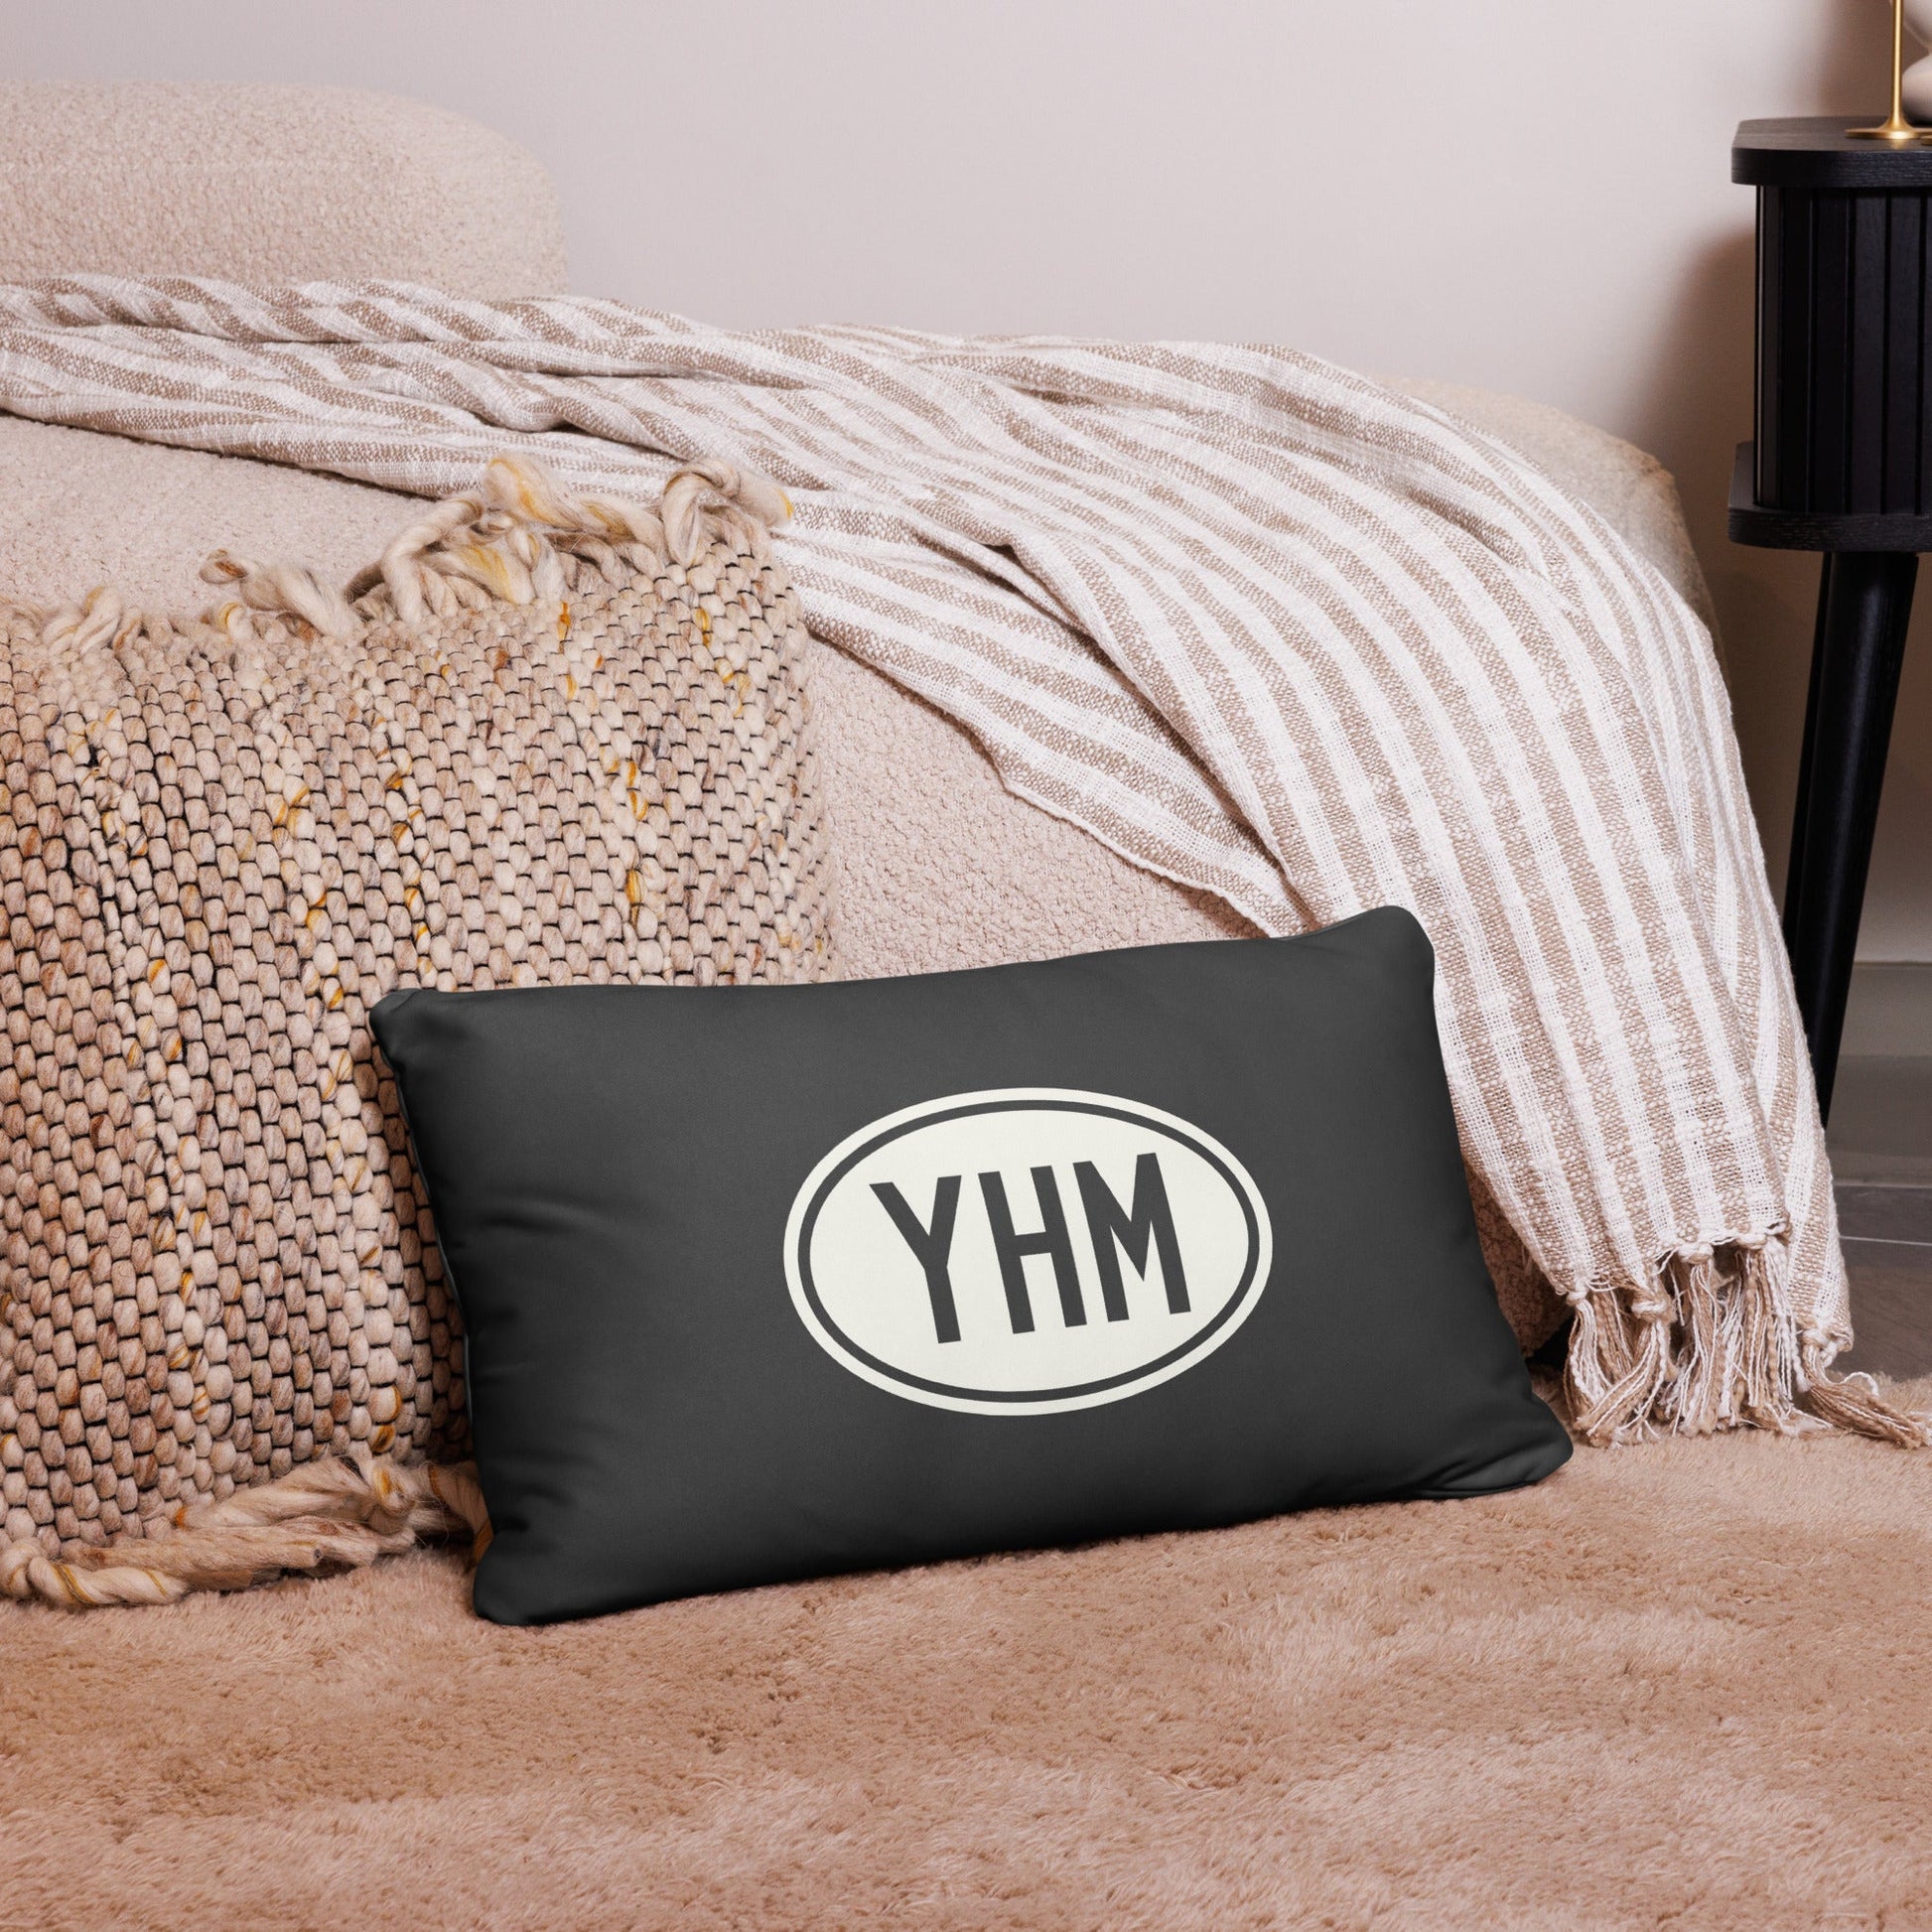 Unique Travel Gift Throw Pillow - White Oval • MIA Miami • YHM Designs - Image 05